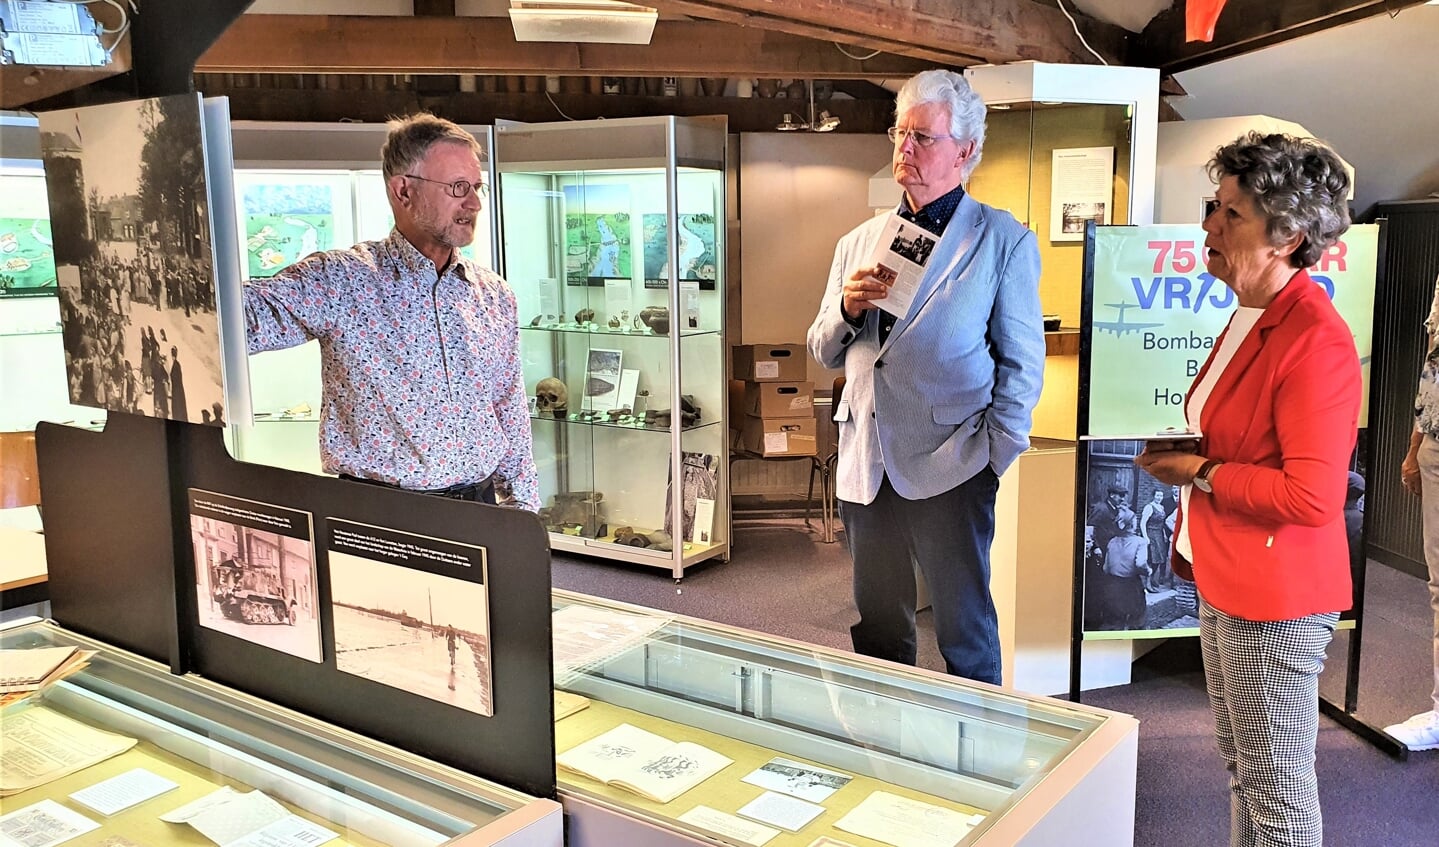 Herman toont de expositie aan Lida en Hans